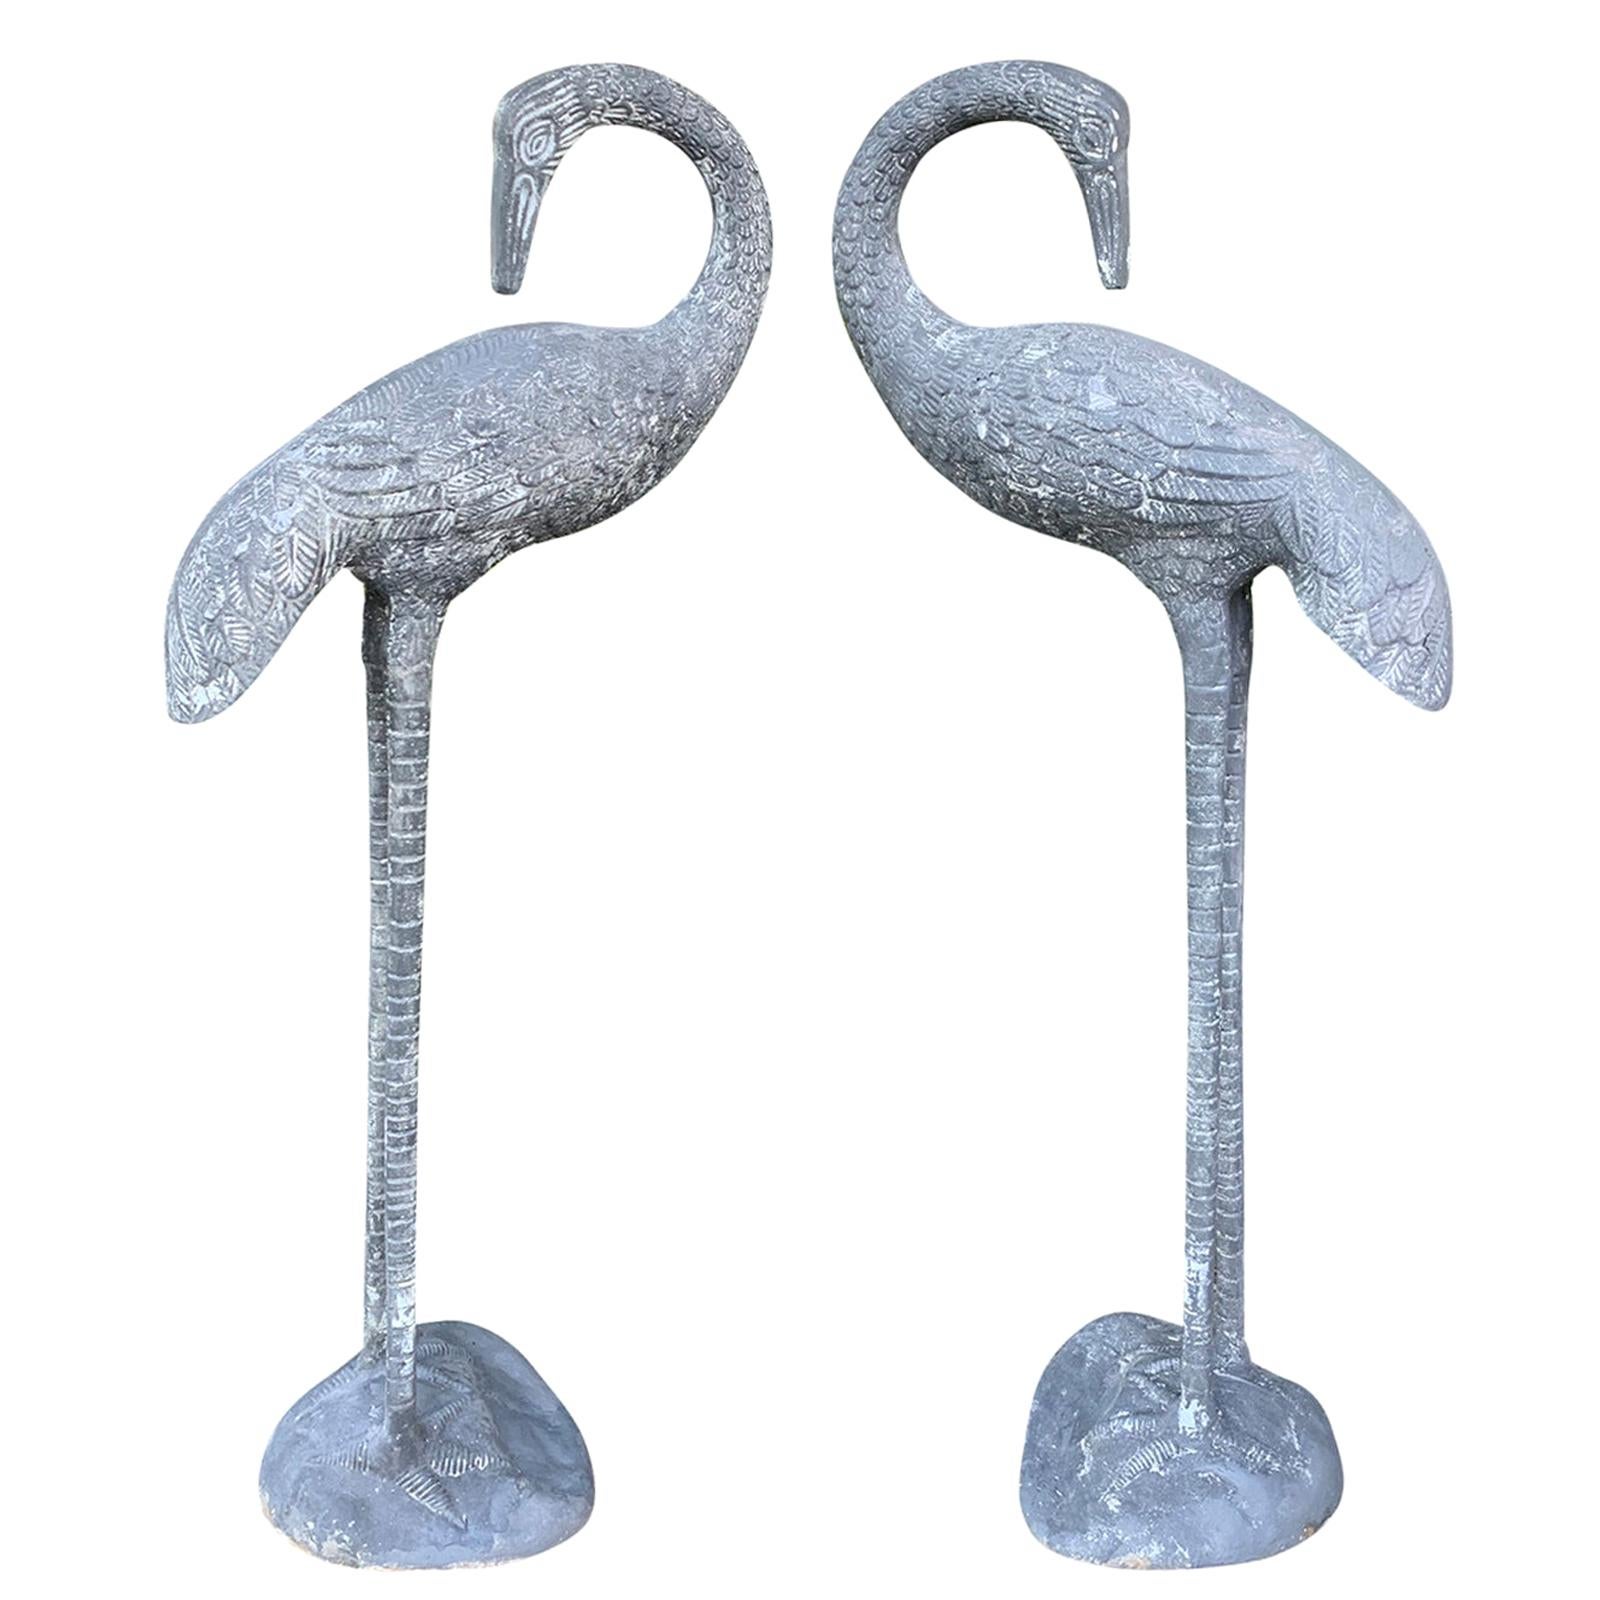 Pair of Mid-20th Century Aluminum Cranes